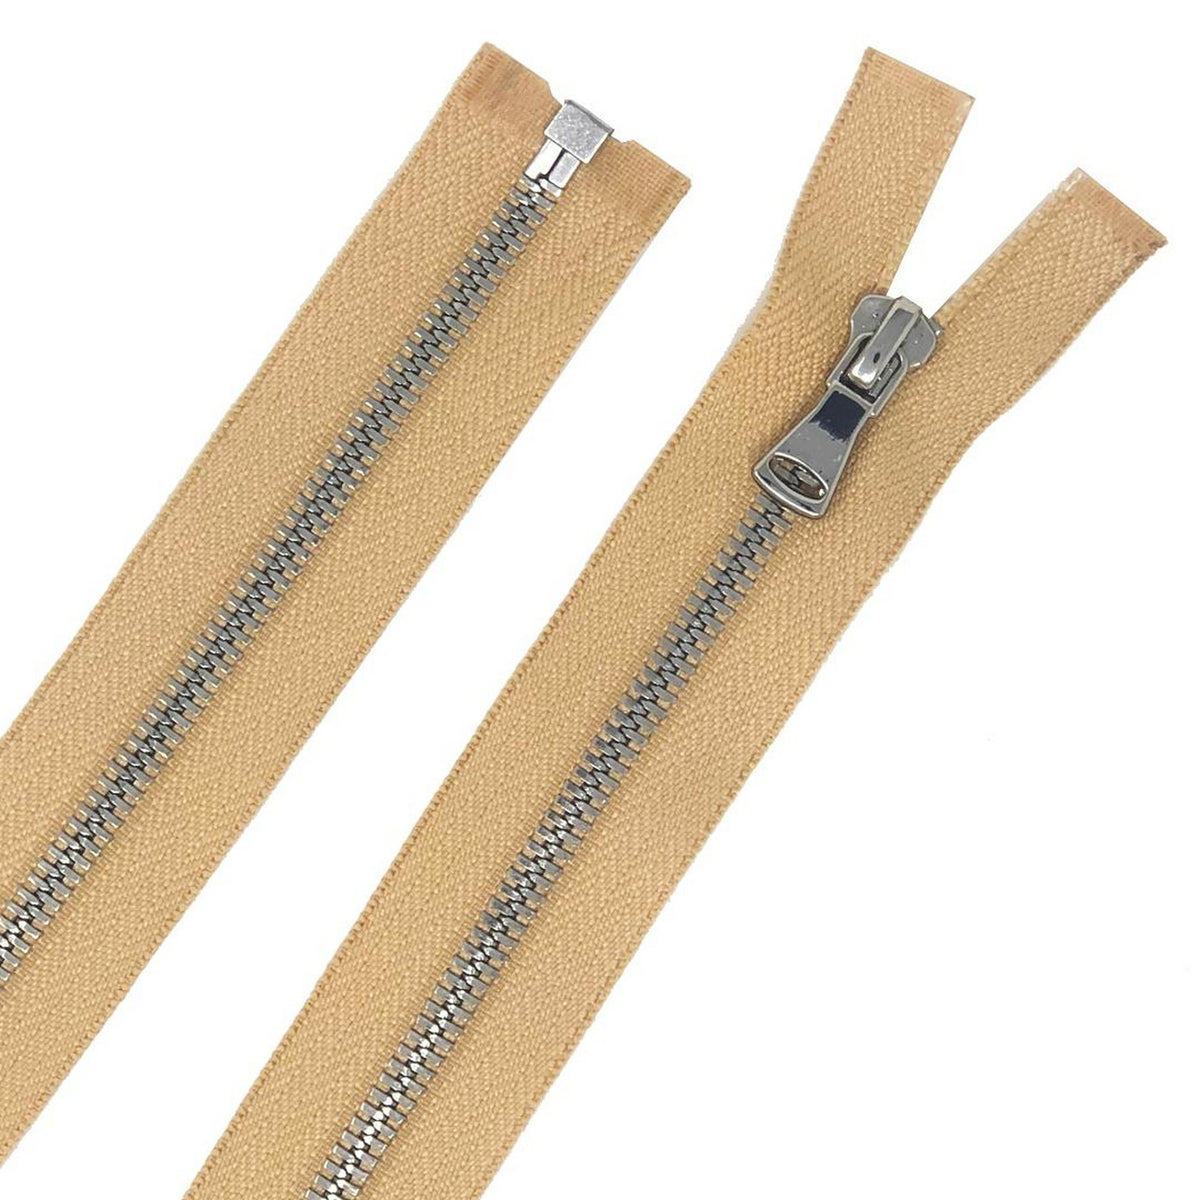 Beige Metal Two-Way Separating Zipper with Gunmetal Teeth - 39 - Metal  Zippers - Zippers - Notions